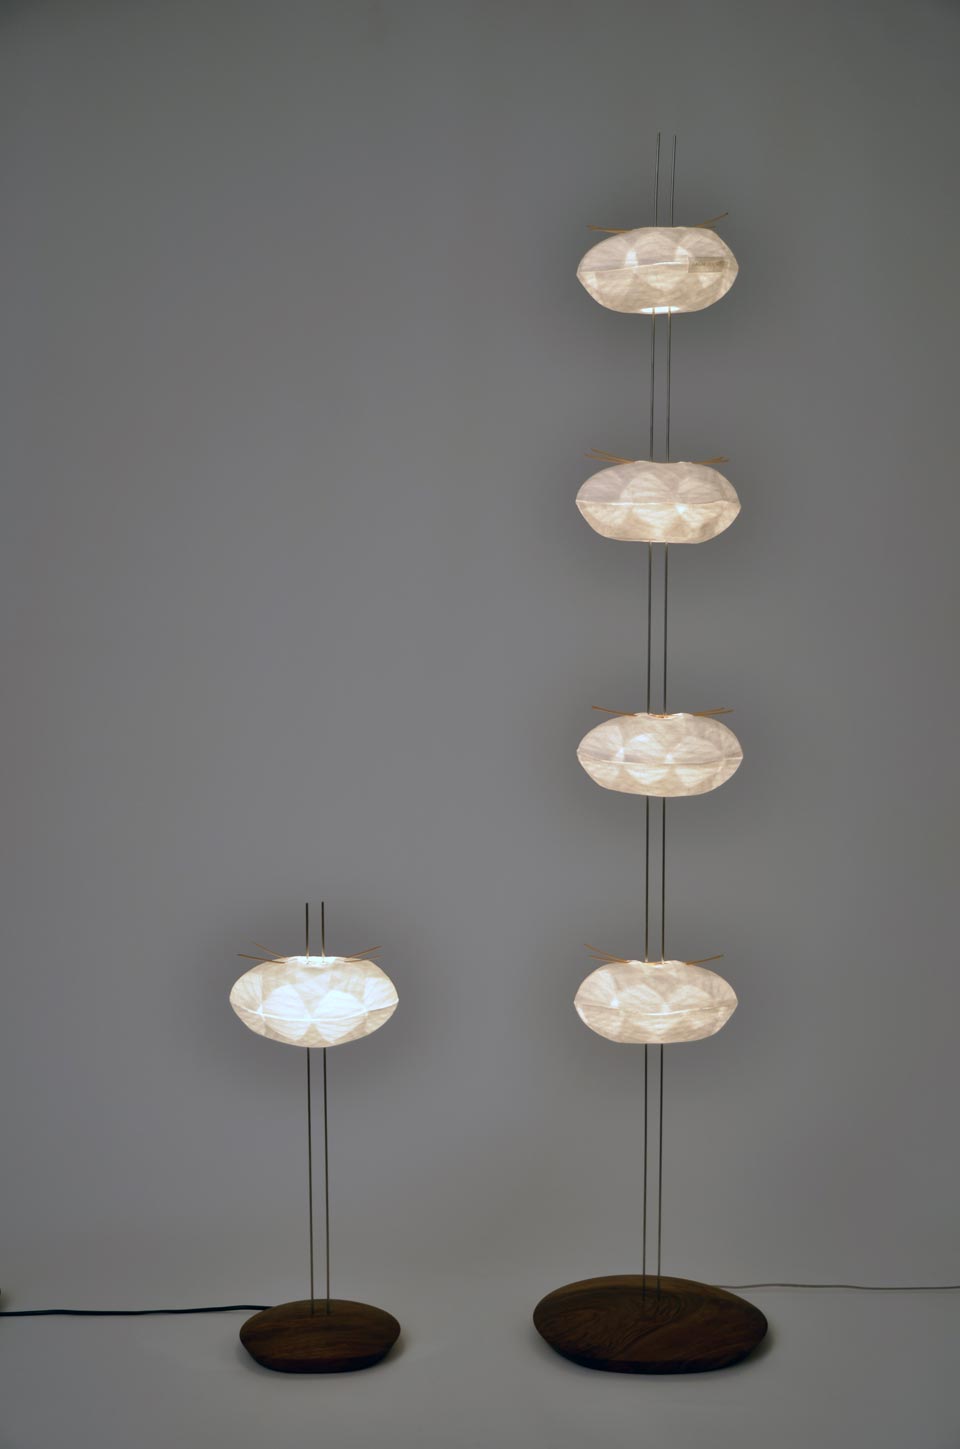 4 Cocons lampadaire. Céline Wright. 